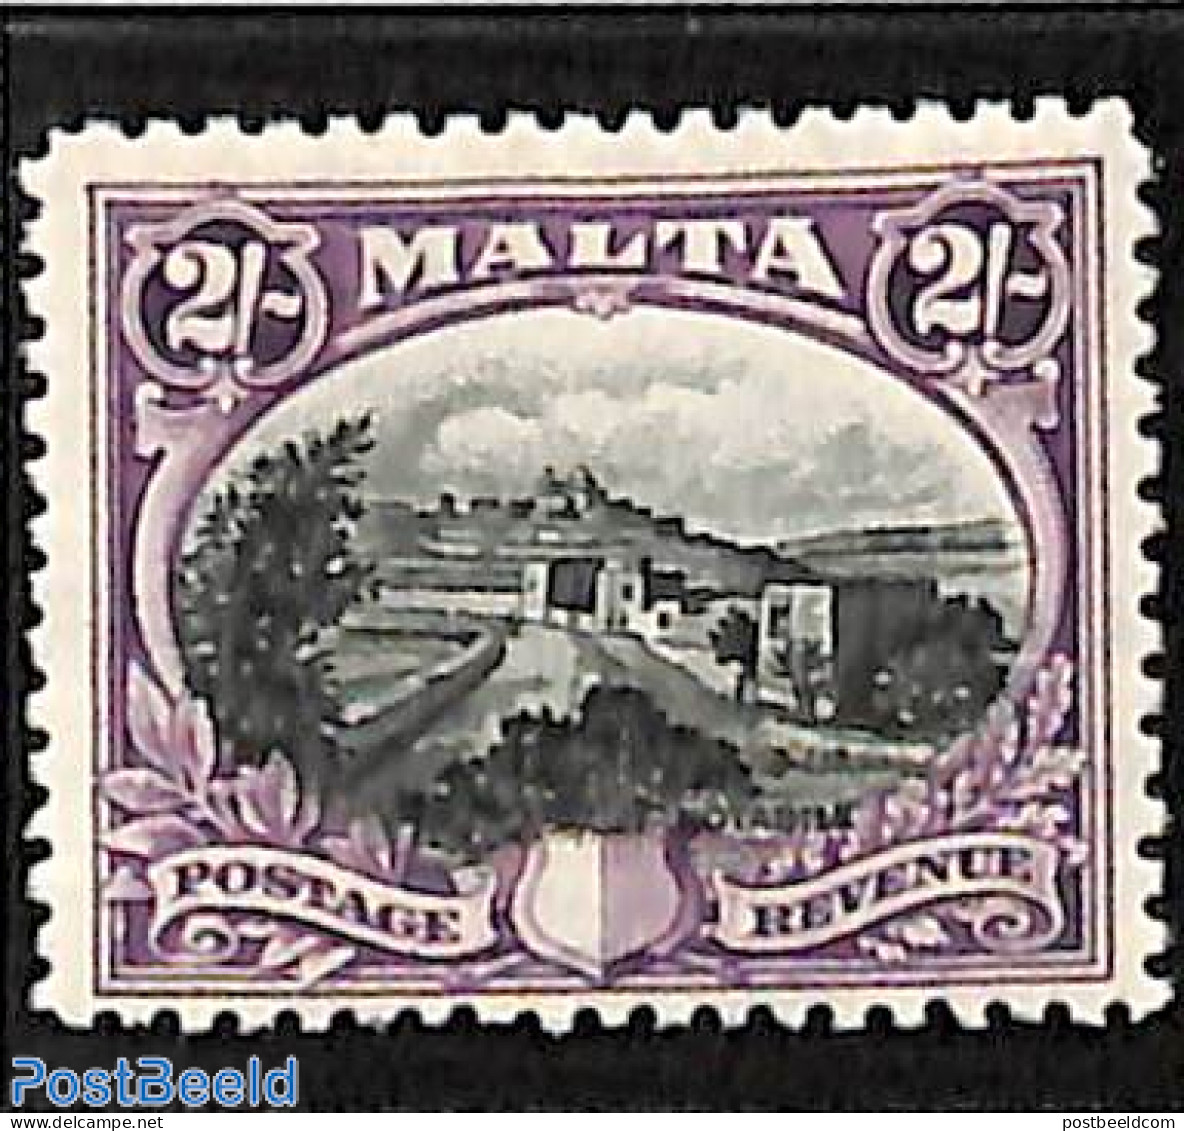 Malta 1930 2sh, Stamp Out Of Set, Unused (hinged) - Malta